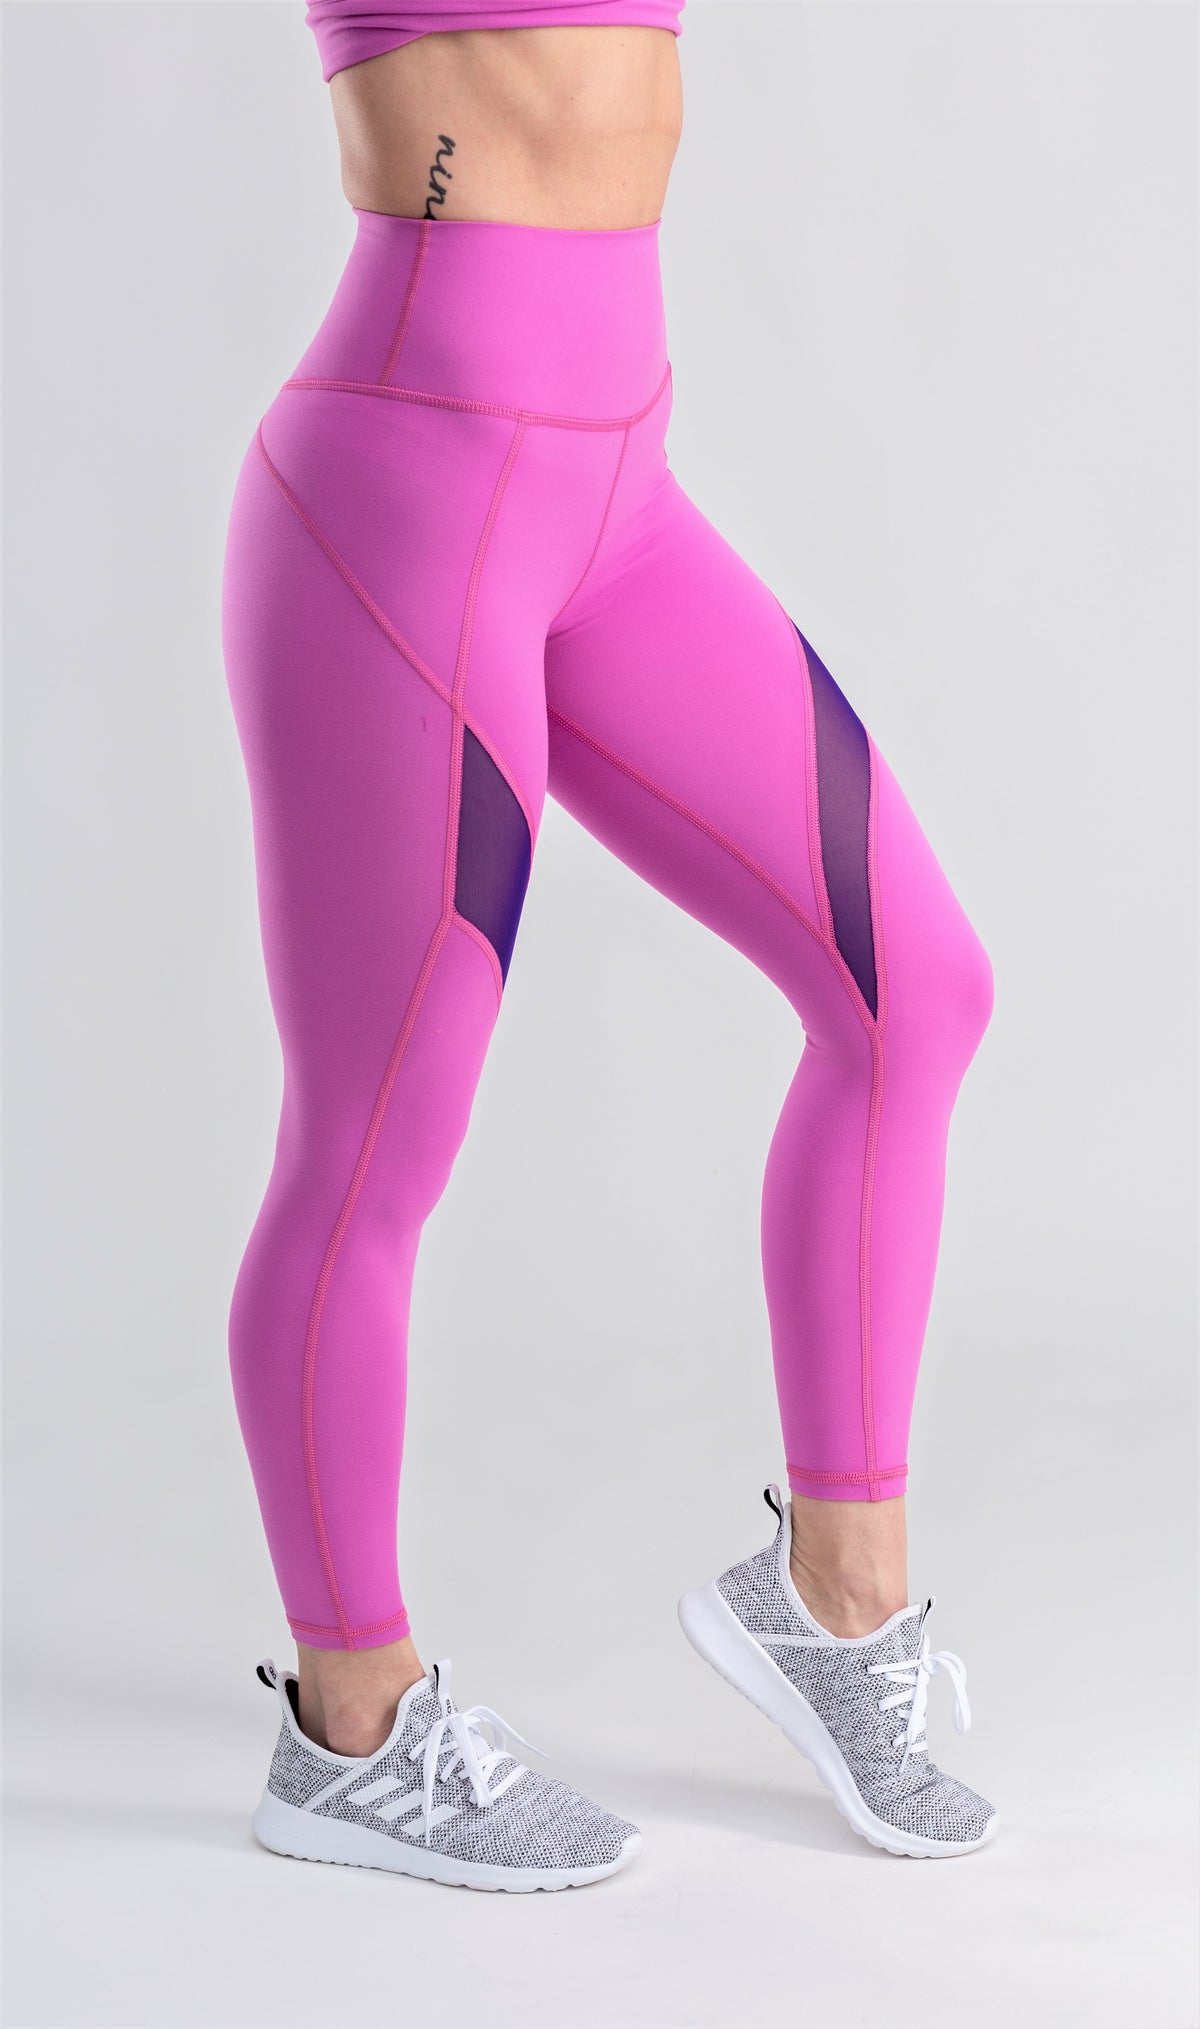 Pink mesh leggings